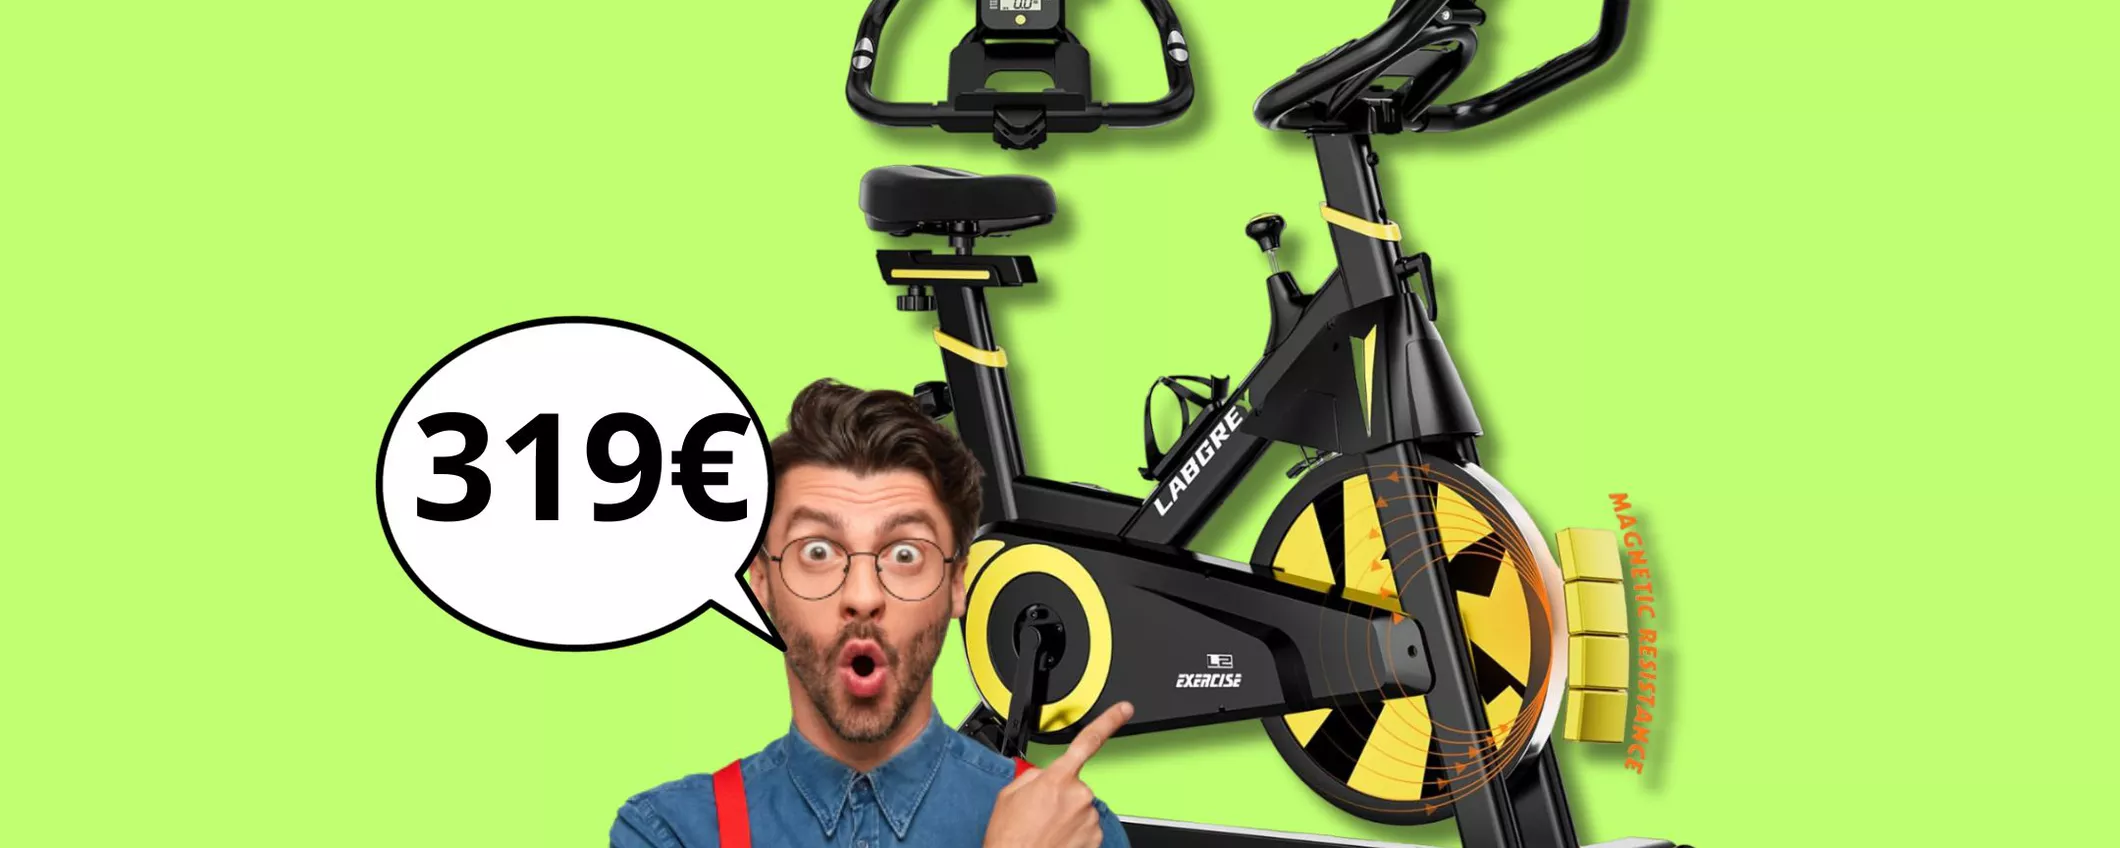 Ritorna in forma dopo le feste: Cyclette Labgrey in OFFERTA a soli 319 euro!